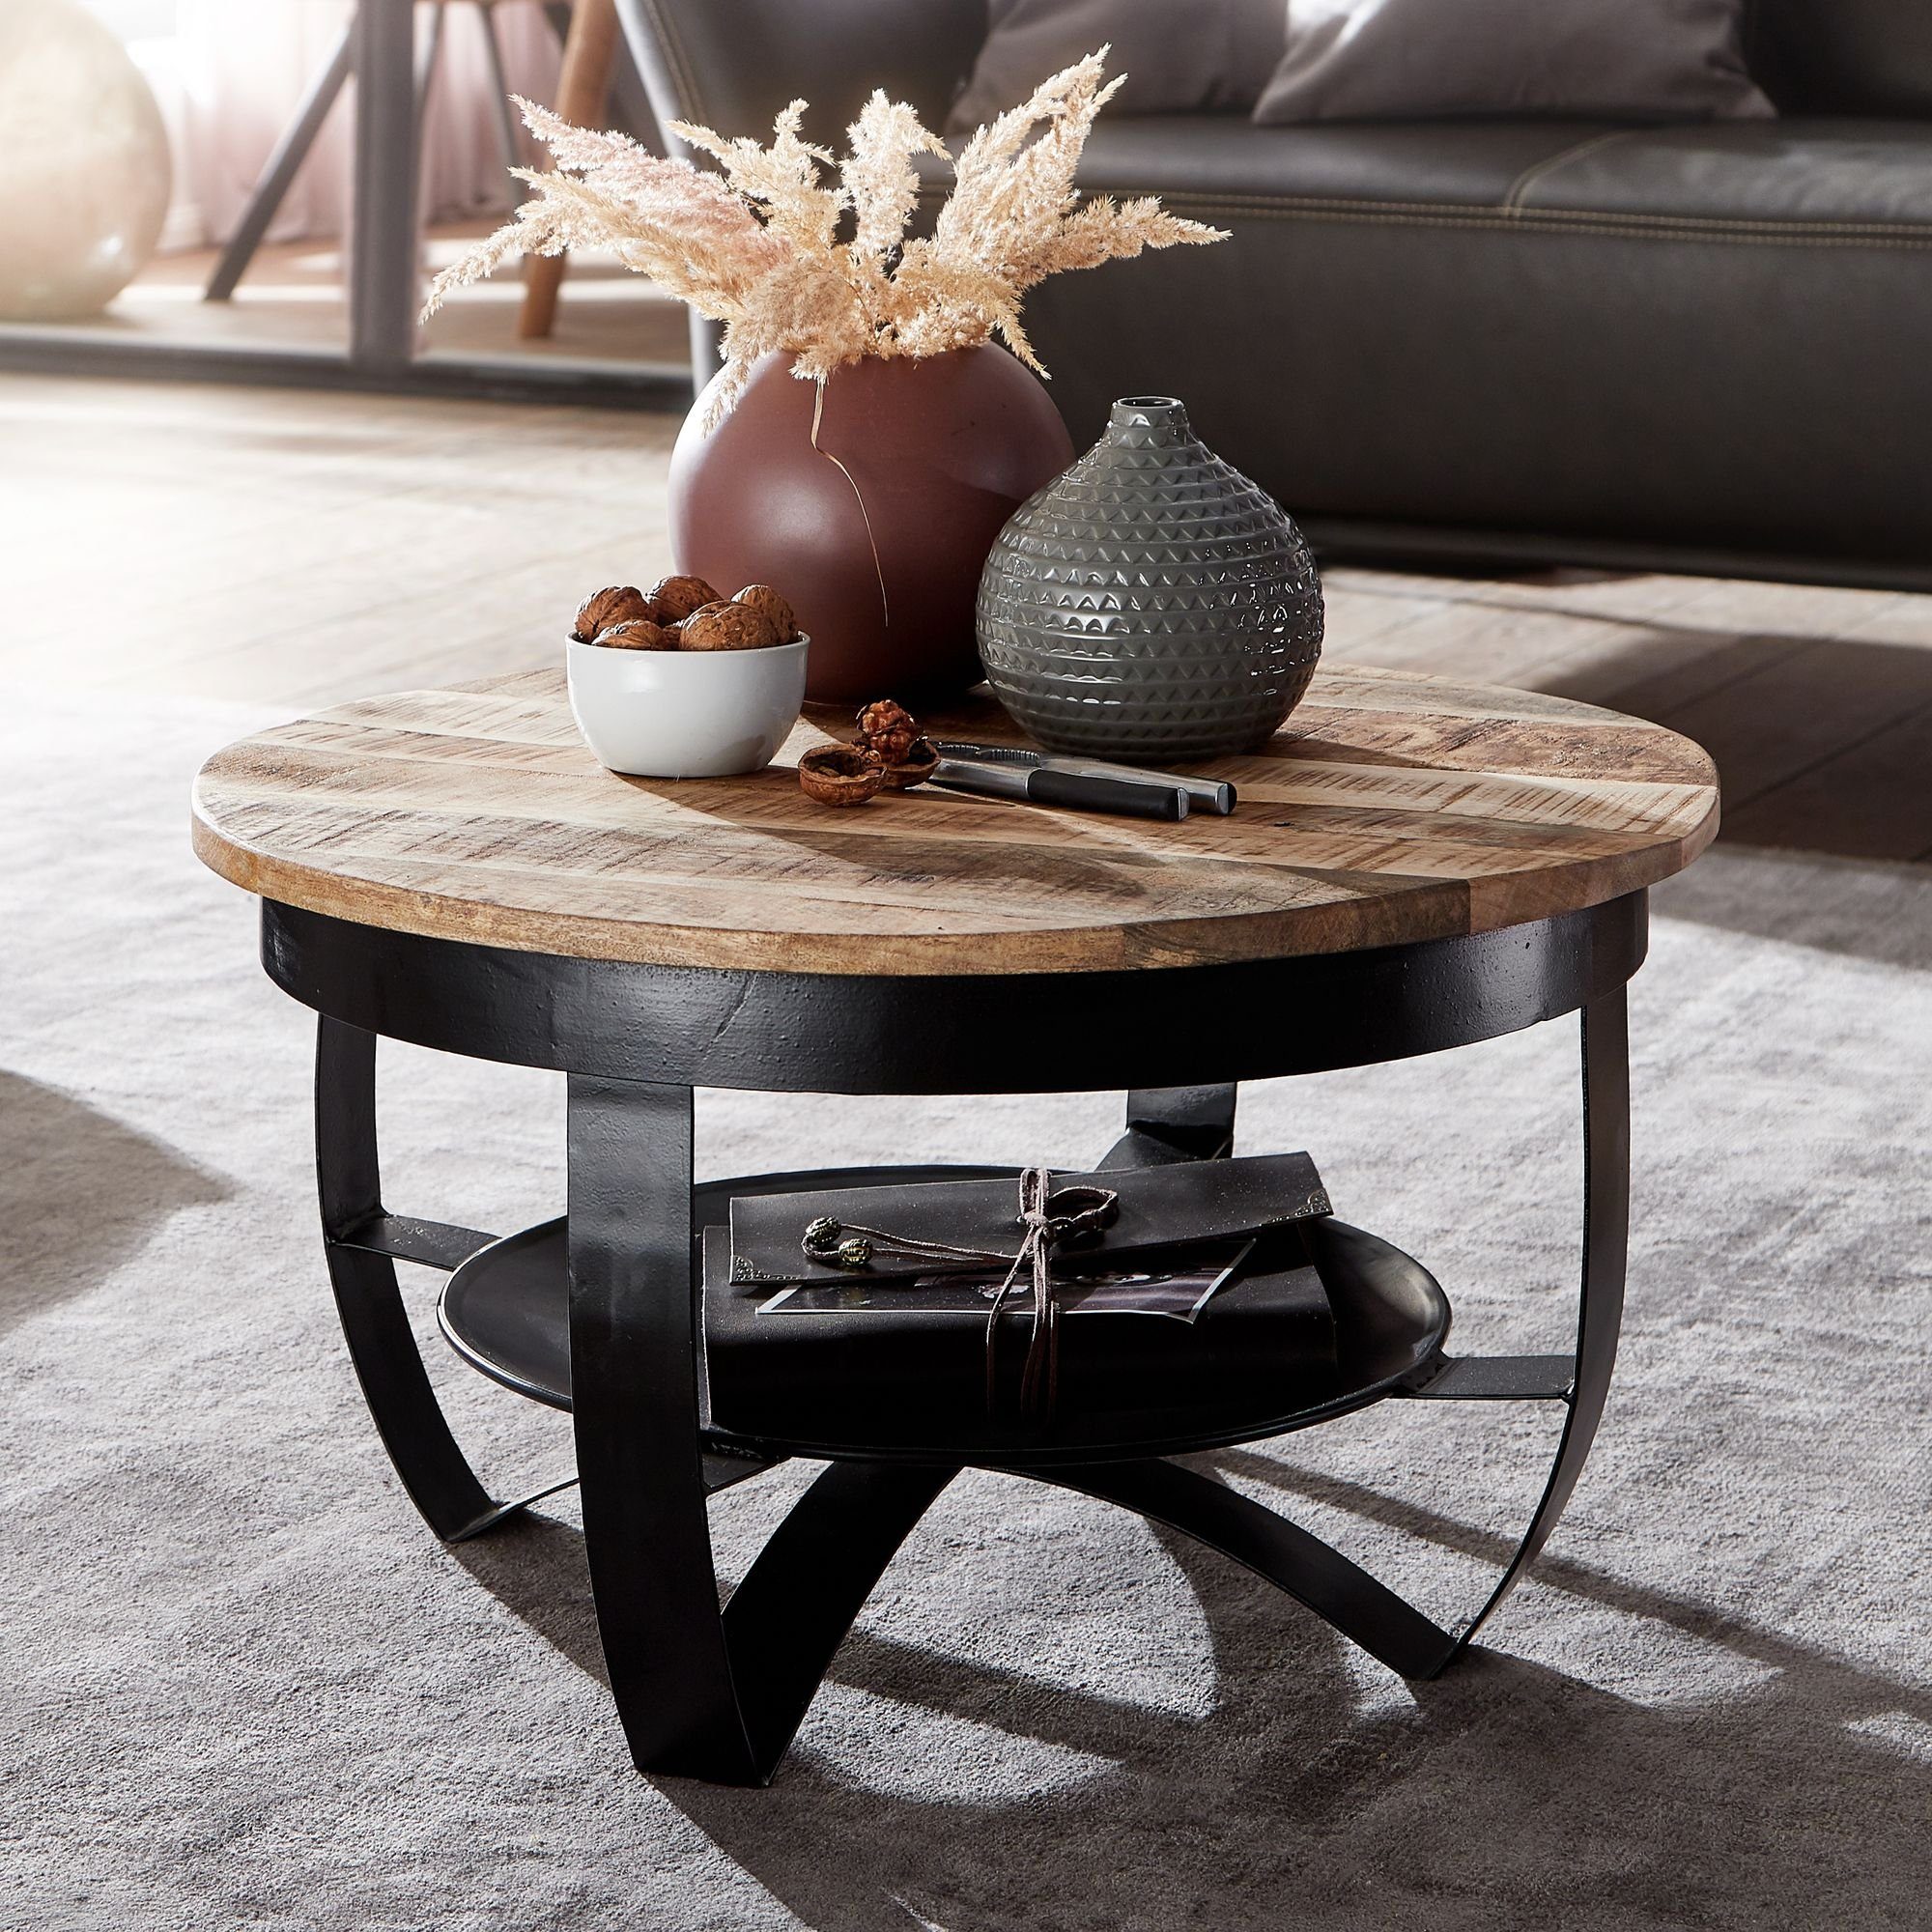 Tisch Wohnzimmertisch Loftdesign Industriedesign Couchtisch Original Holz Metall 